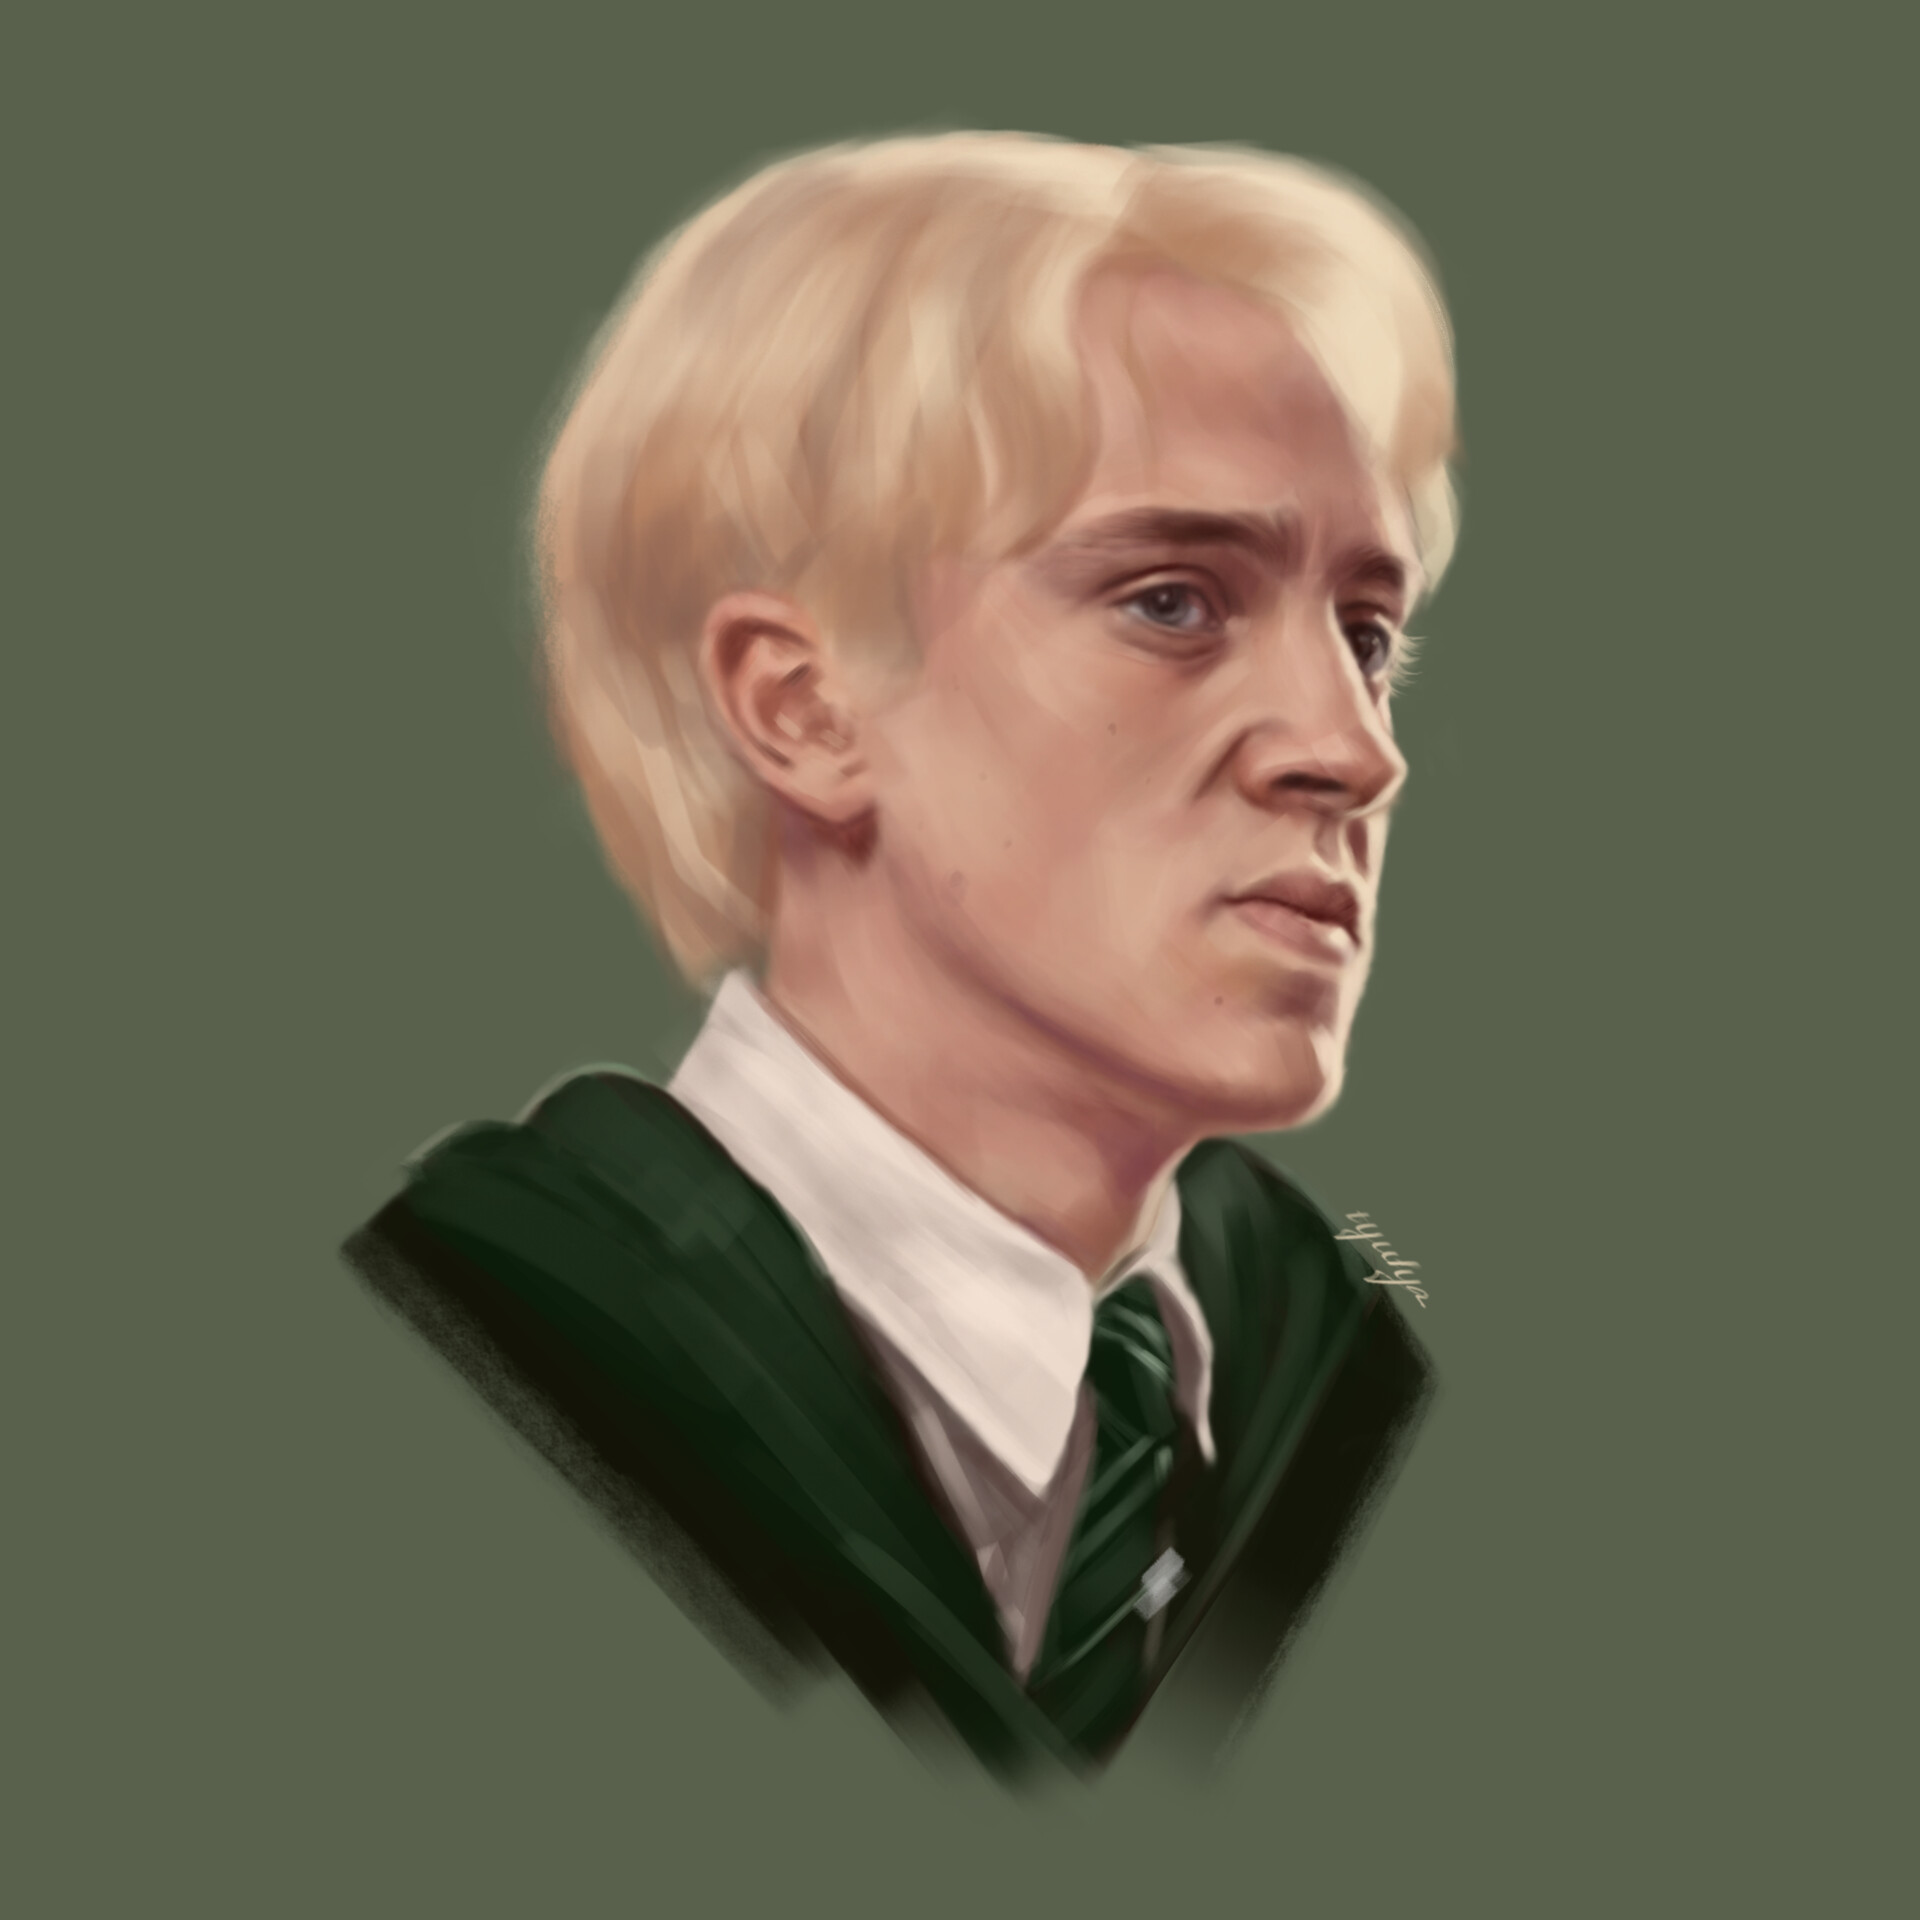 ArtStation - Fan art: Draco Malfoy